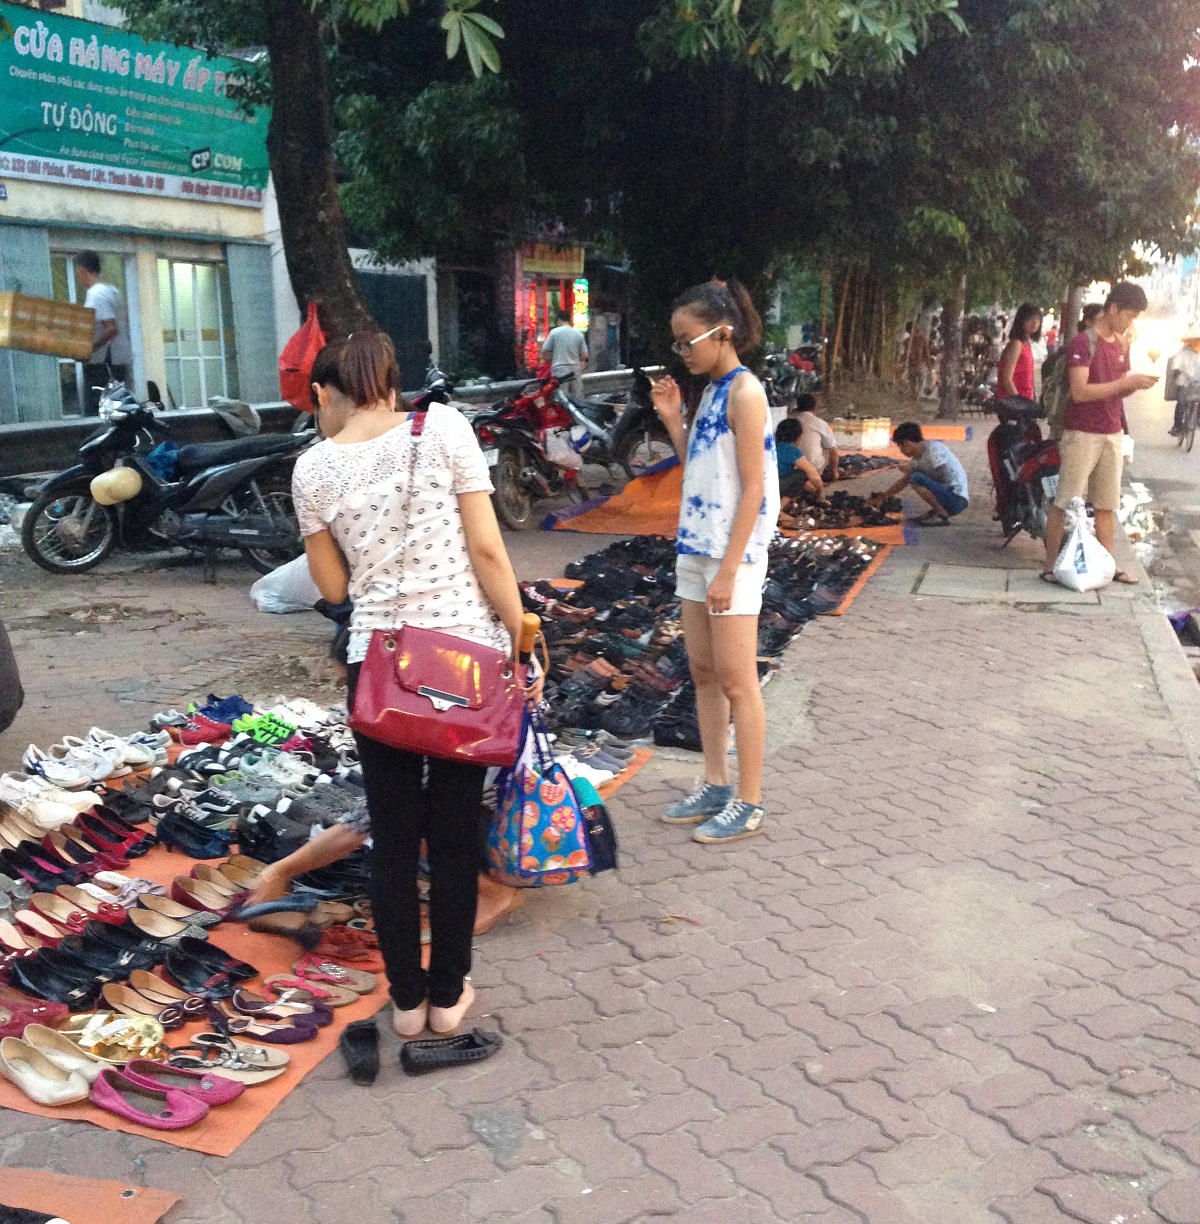 Chợ cóc khu vực cầu Trắng nằm giáp ranh giữa hai phường Giáp Bát (Hoàng Mai) và Phương Liệt (Thanh Xuân) Hà Nội, tồn tại nhiều năm nay mất an toàn giao thông và lấn chiếm hành lang đường sắt